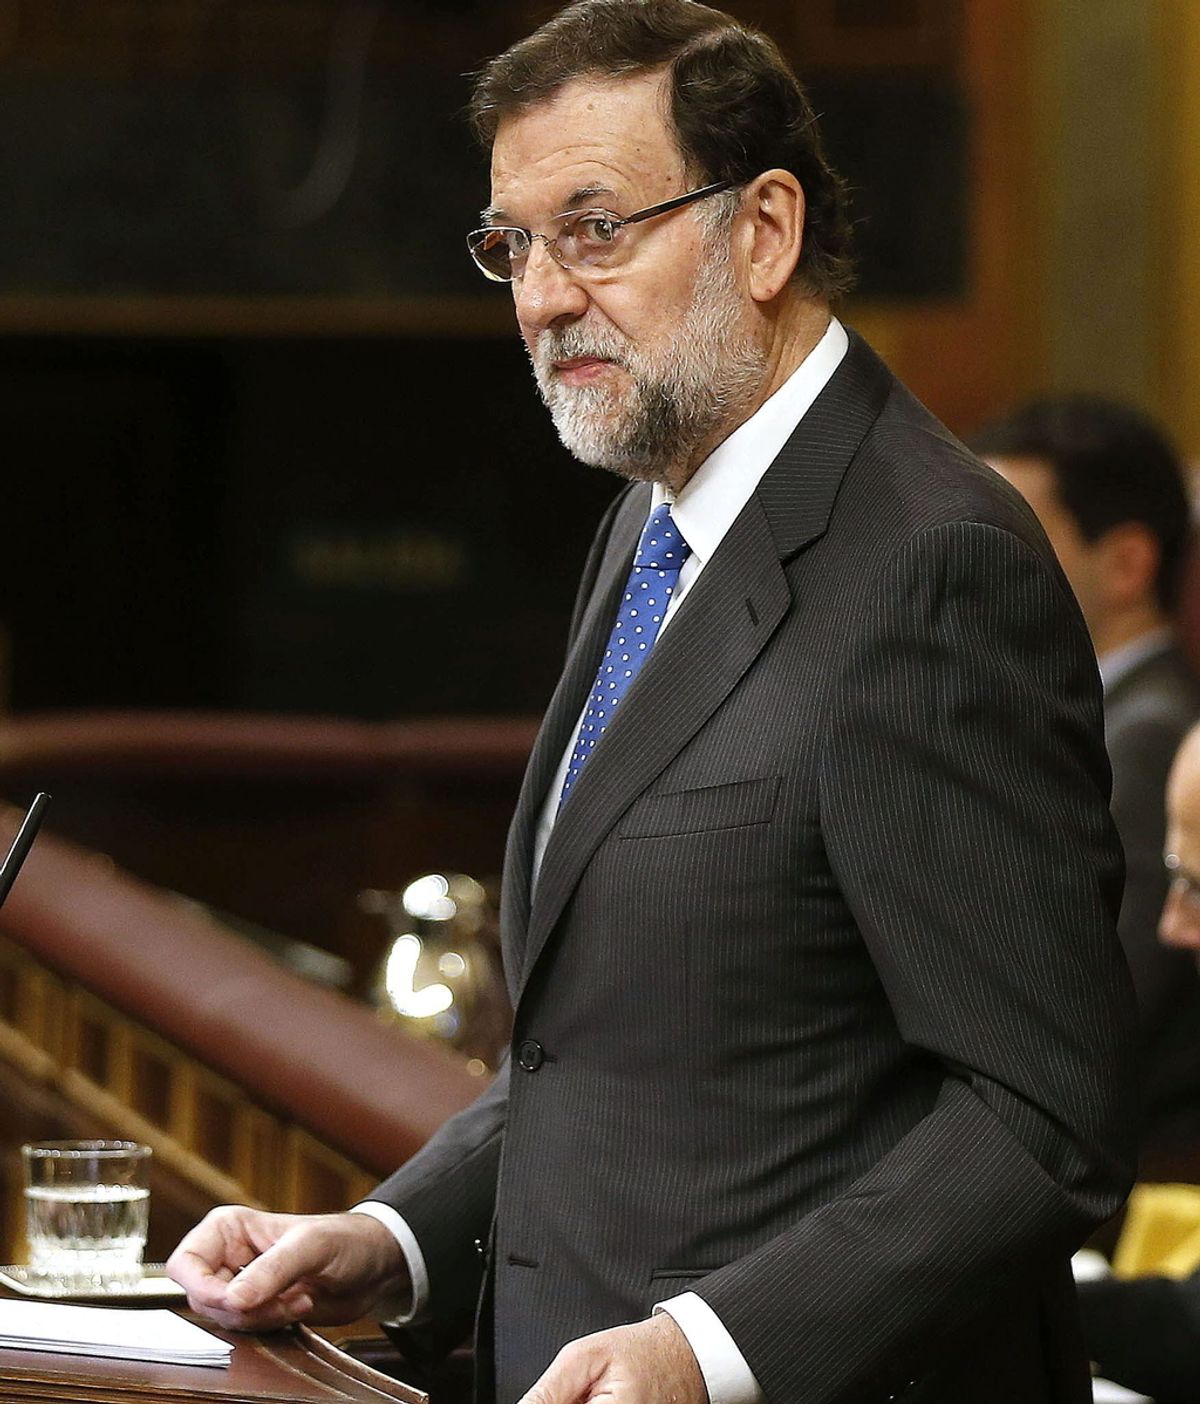 El presidente del Gobierno, Mariano Rajoy, comparece en el Congreso de los Diputados